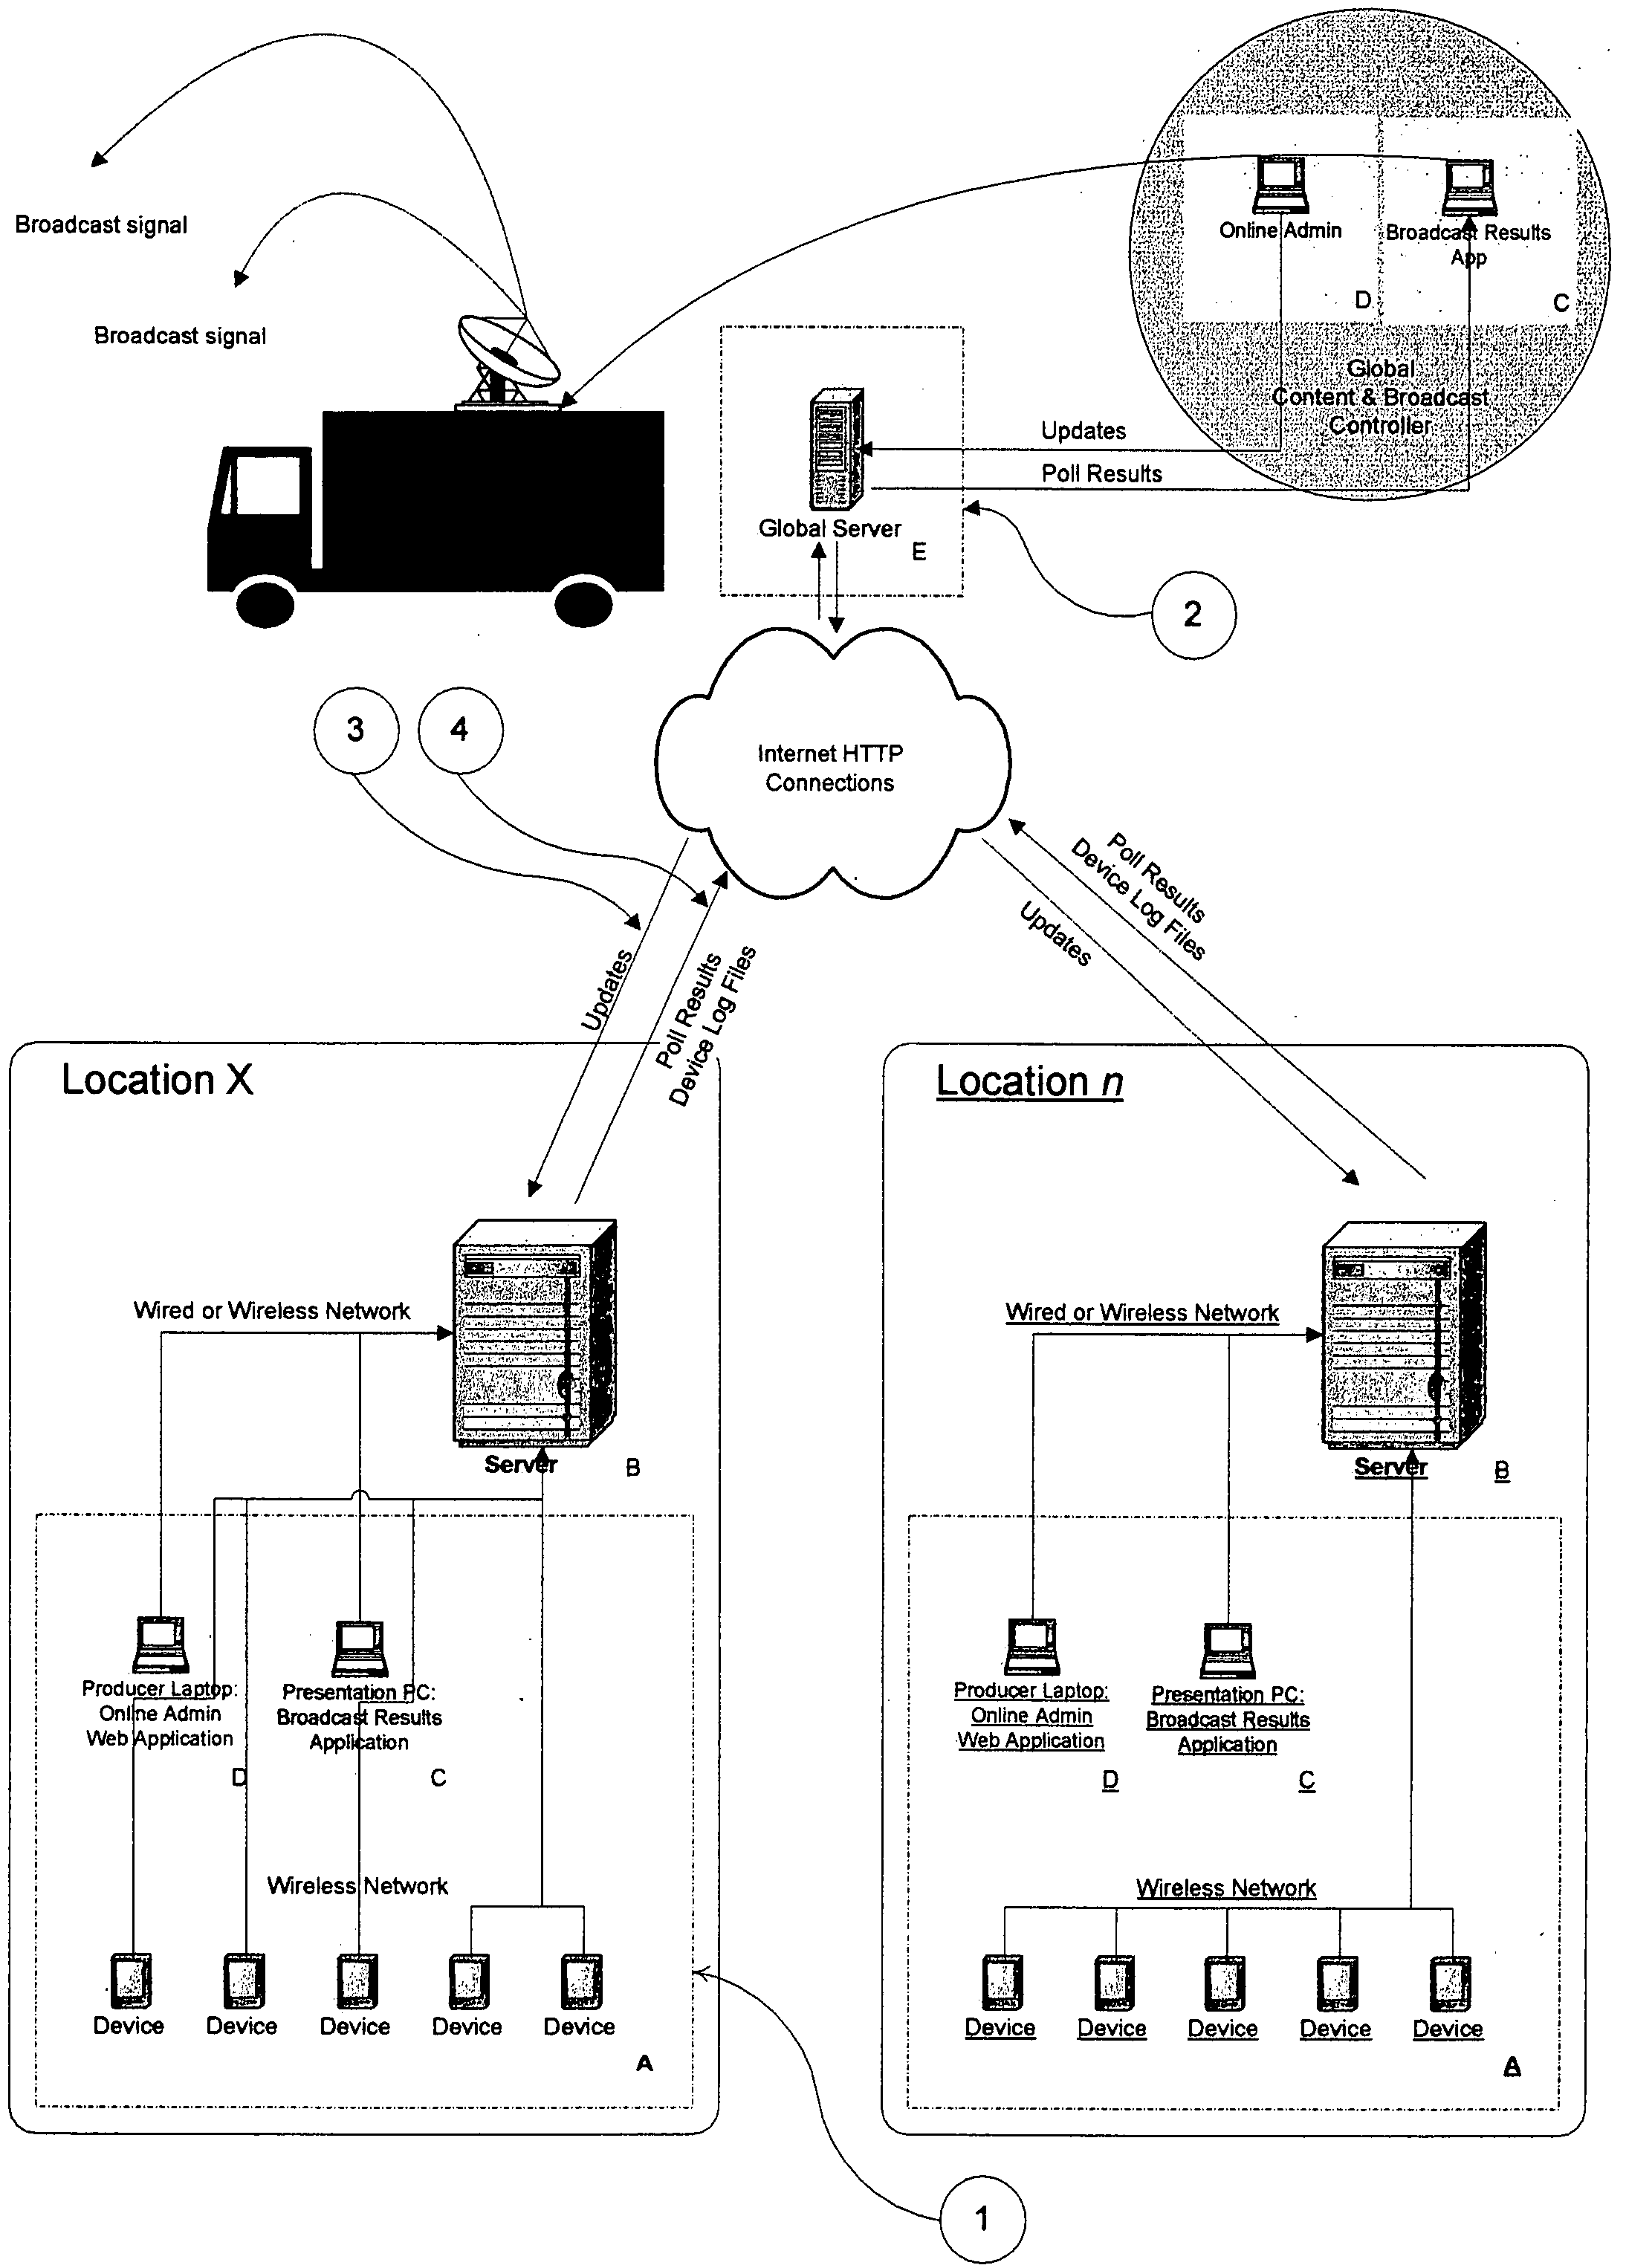 Event liaison system